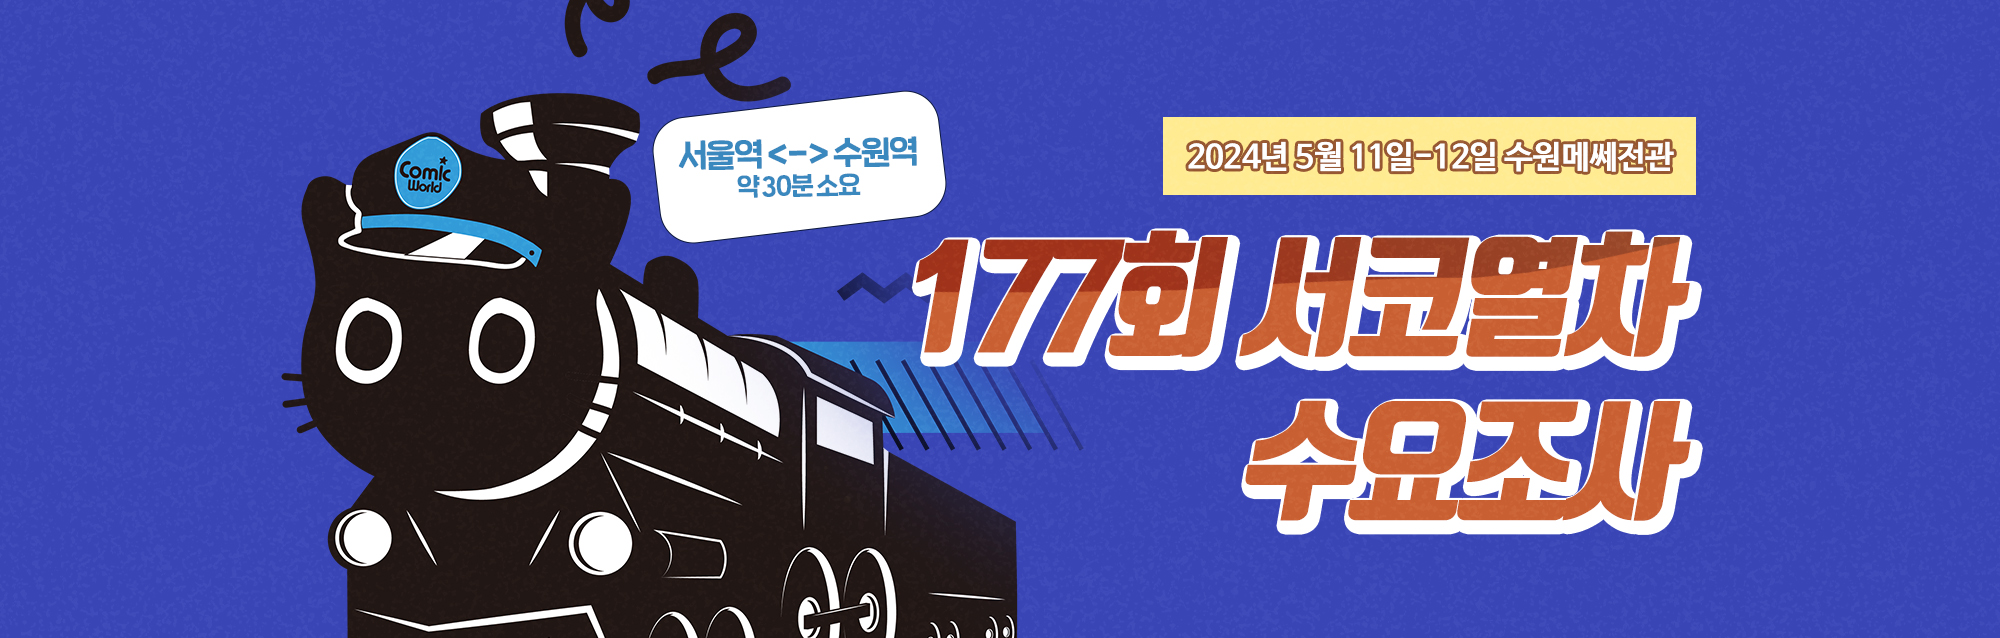 177회 서울코믹월드 서코 열차